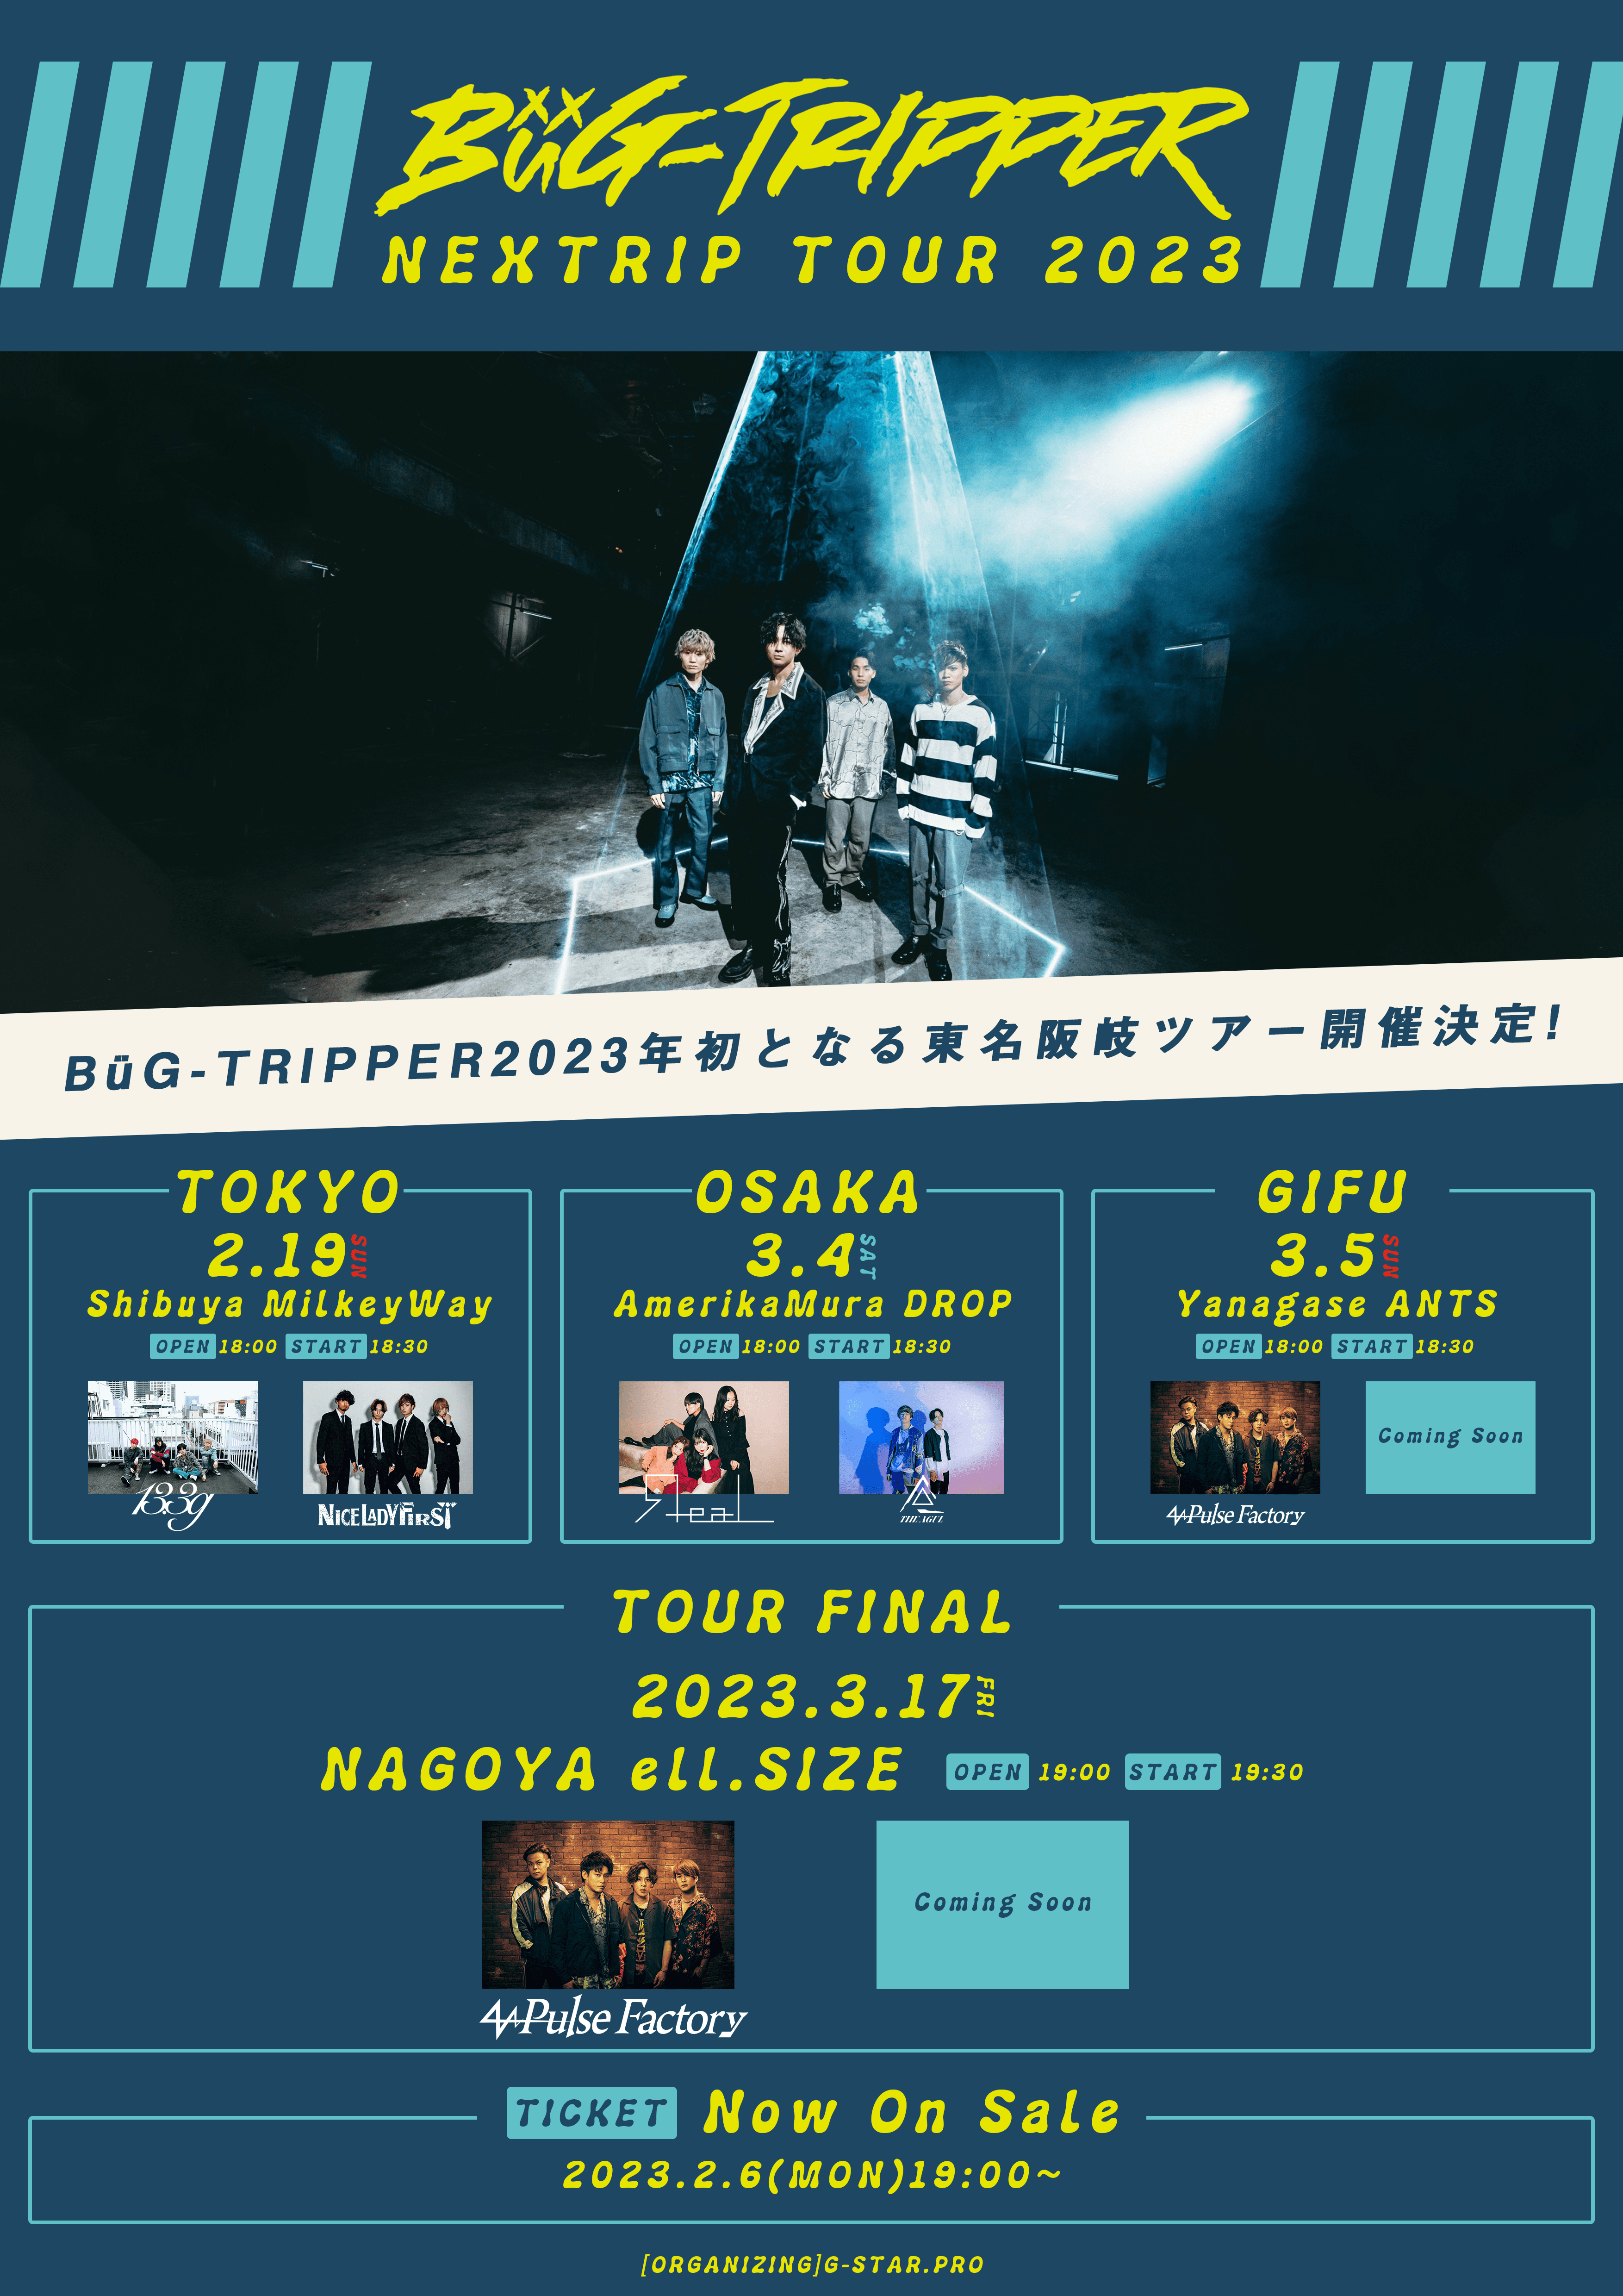 【一般発売】BüG-TRIPPER NEXTRIP TOUR 2023 [大阪公演]